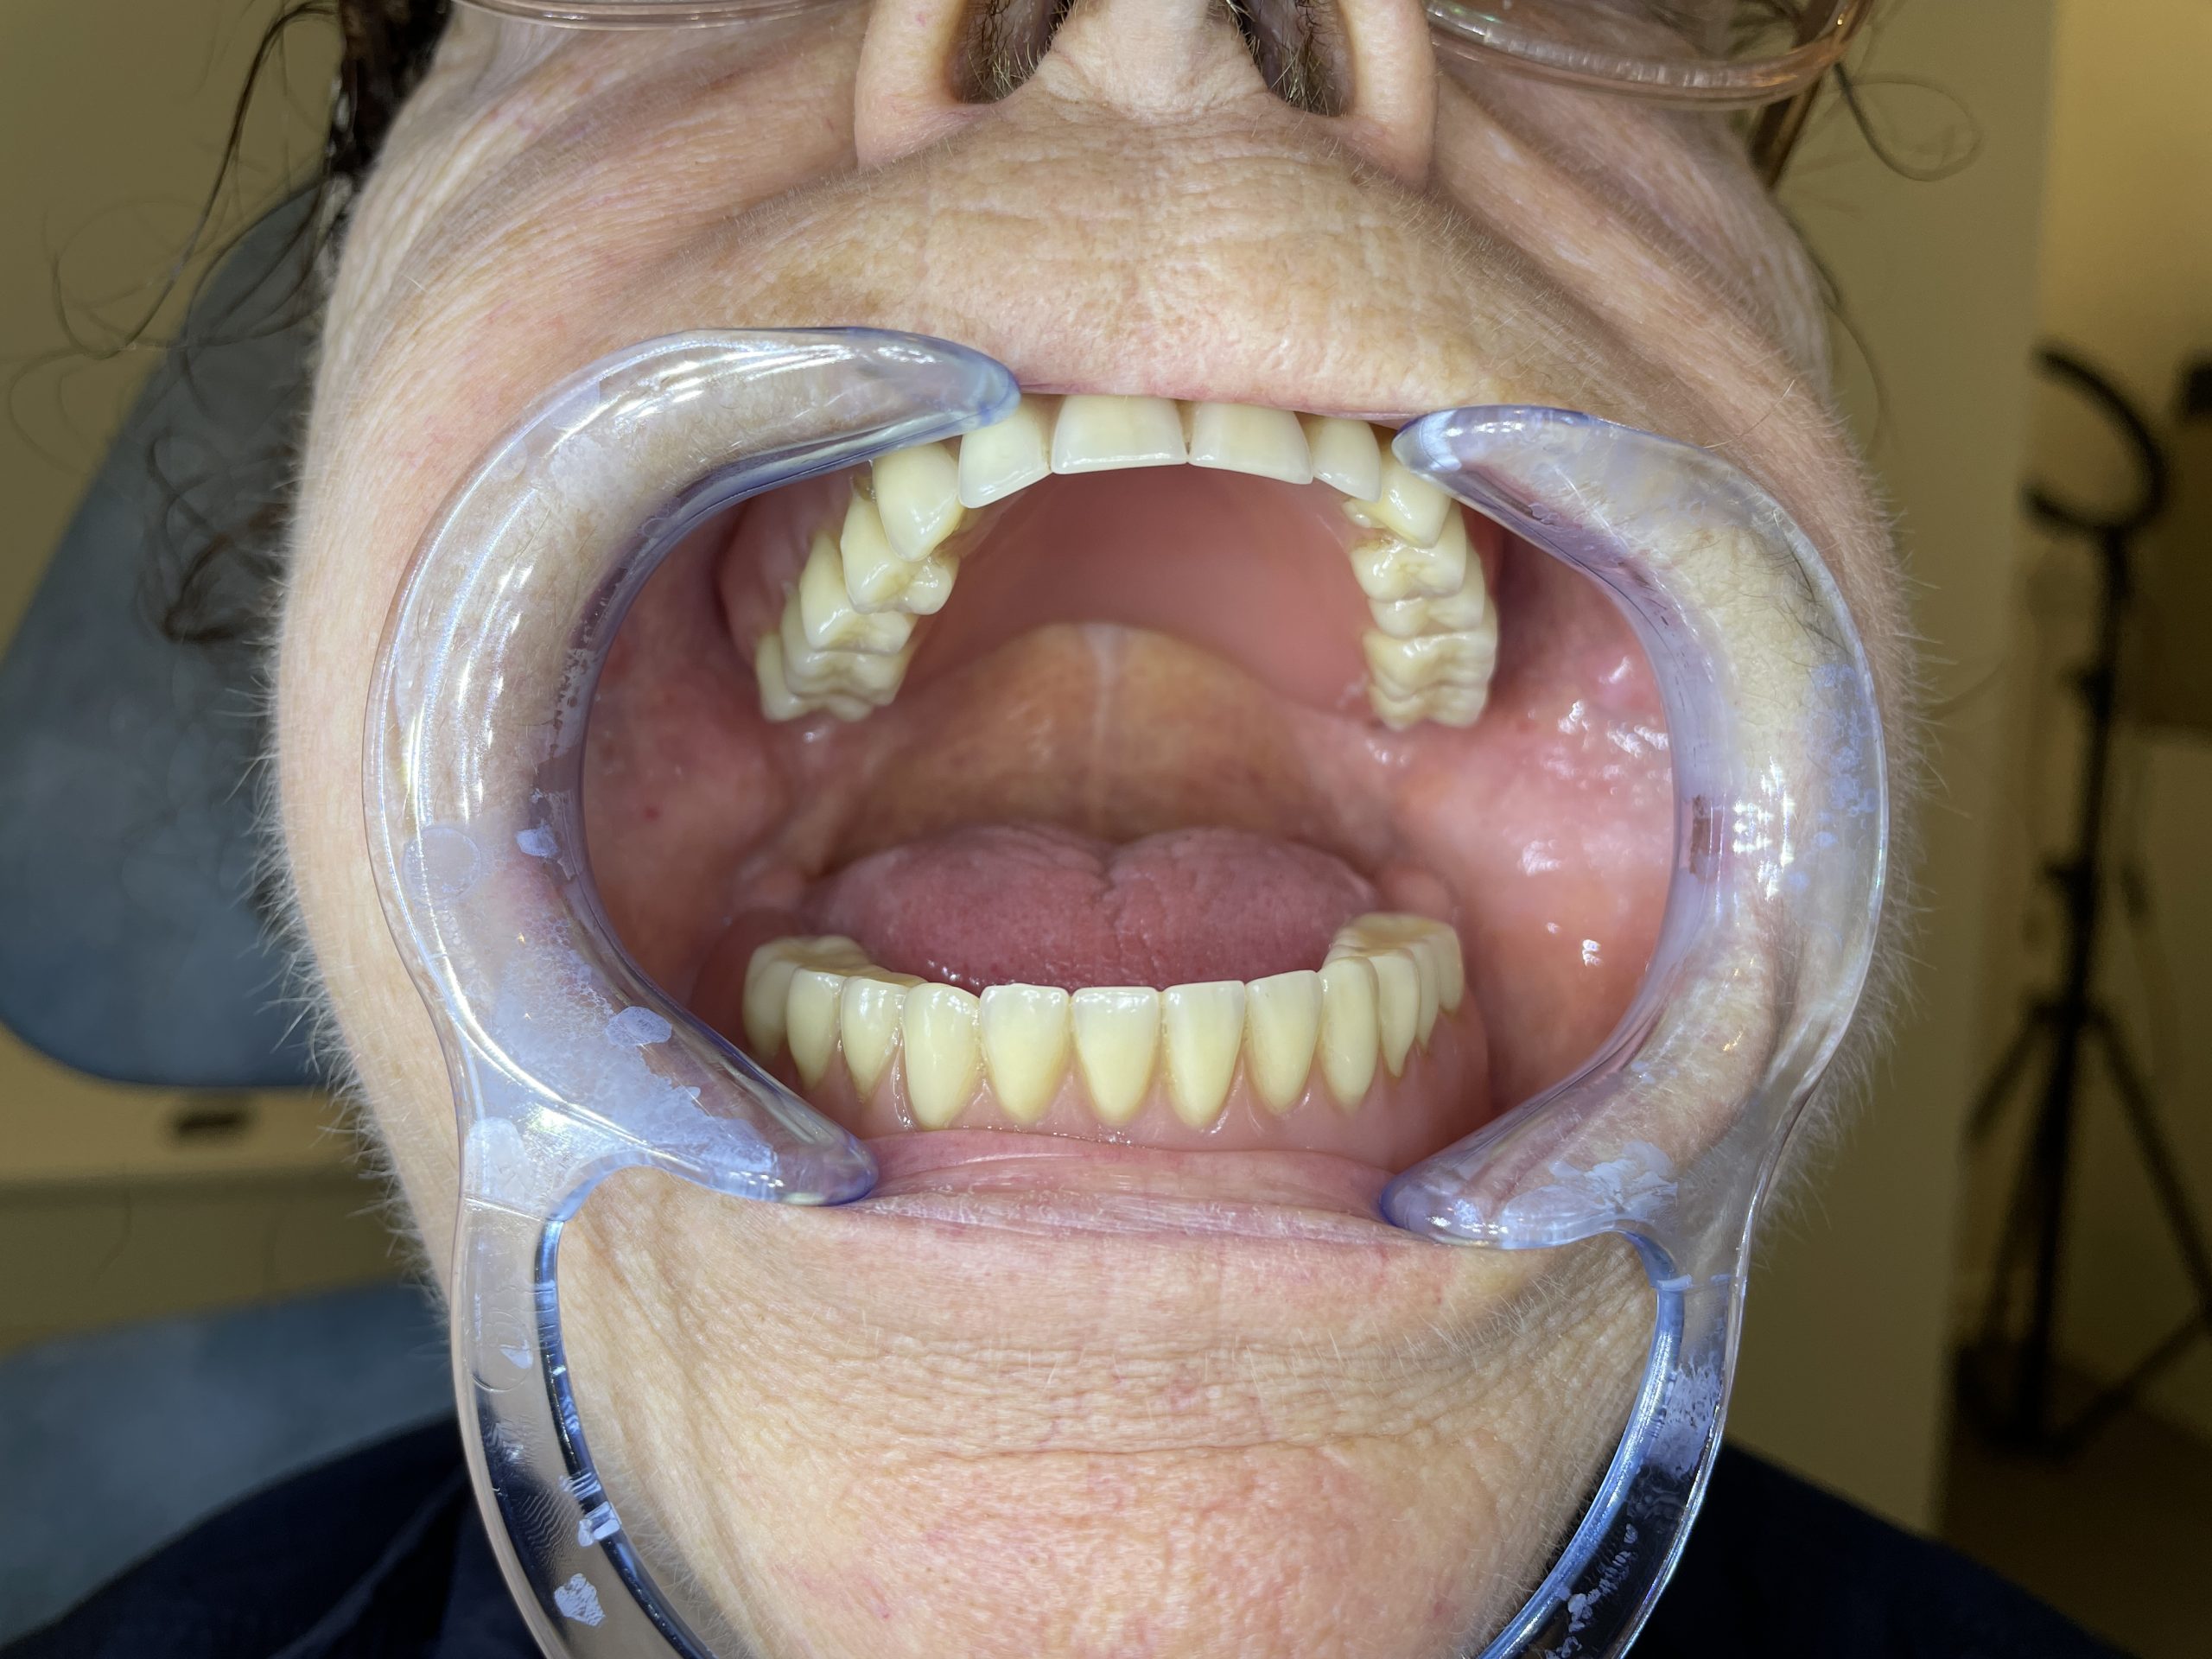 gammel tandprotese før hybrid tandprotese foran åben mund